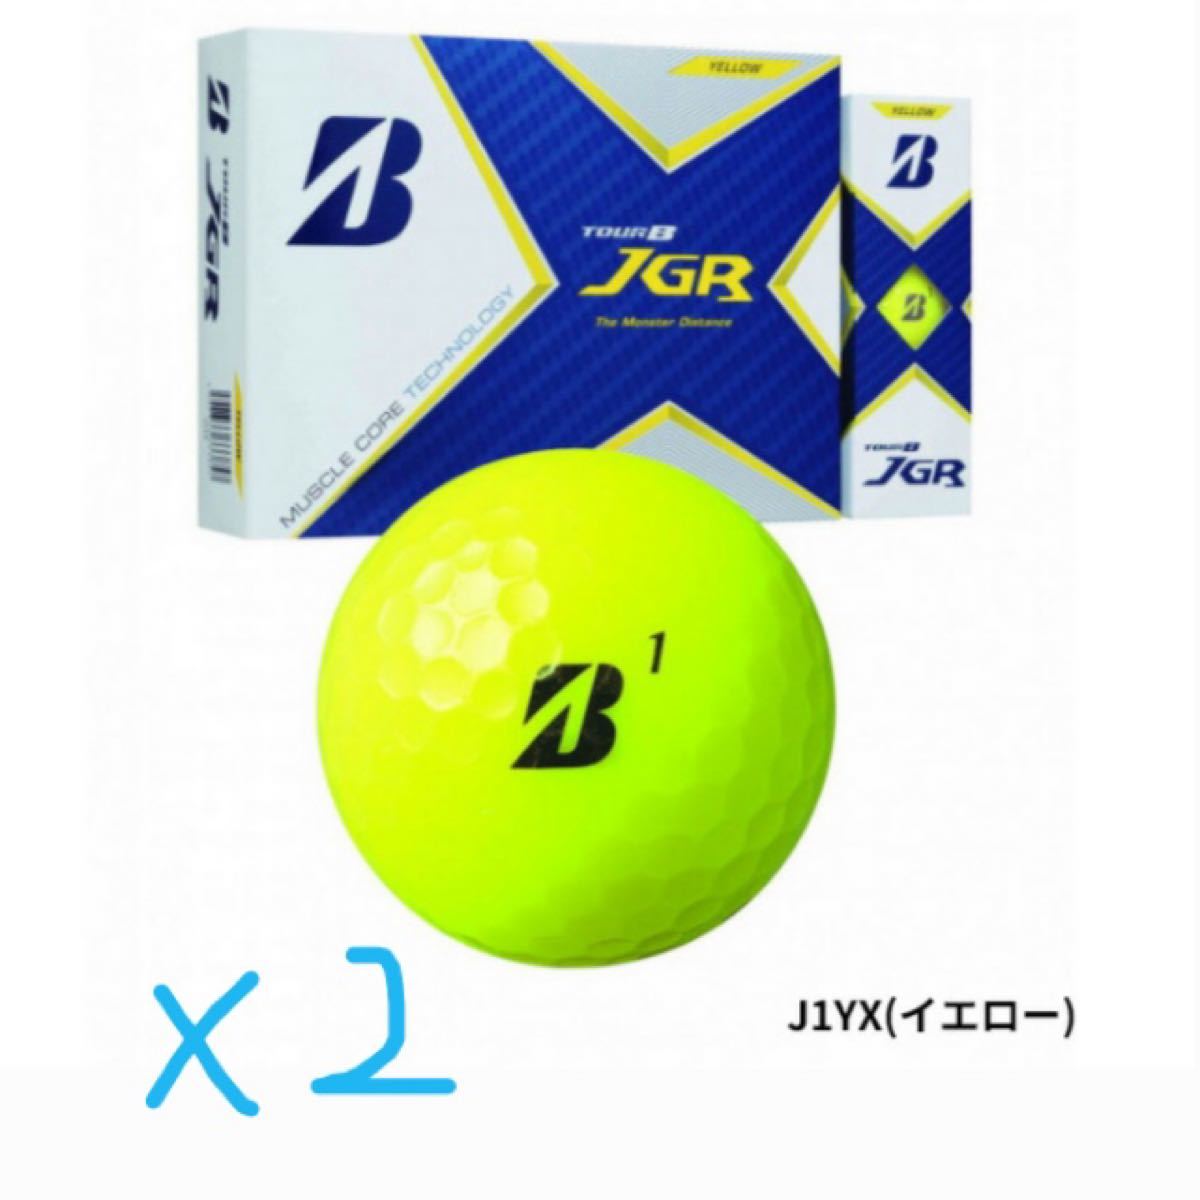 ブリヂストン 21 TOUR B JGR ゴルフボール 2ダース 24個 2021年モデル ...